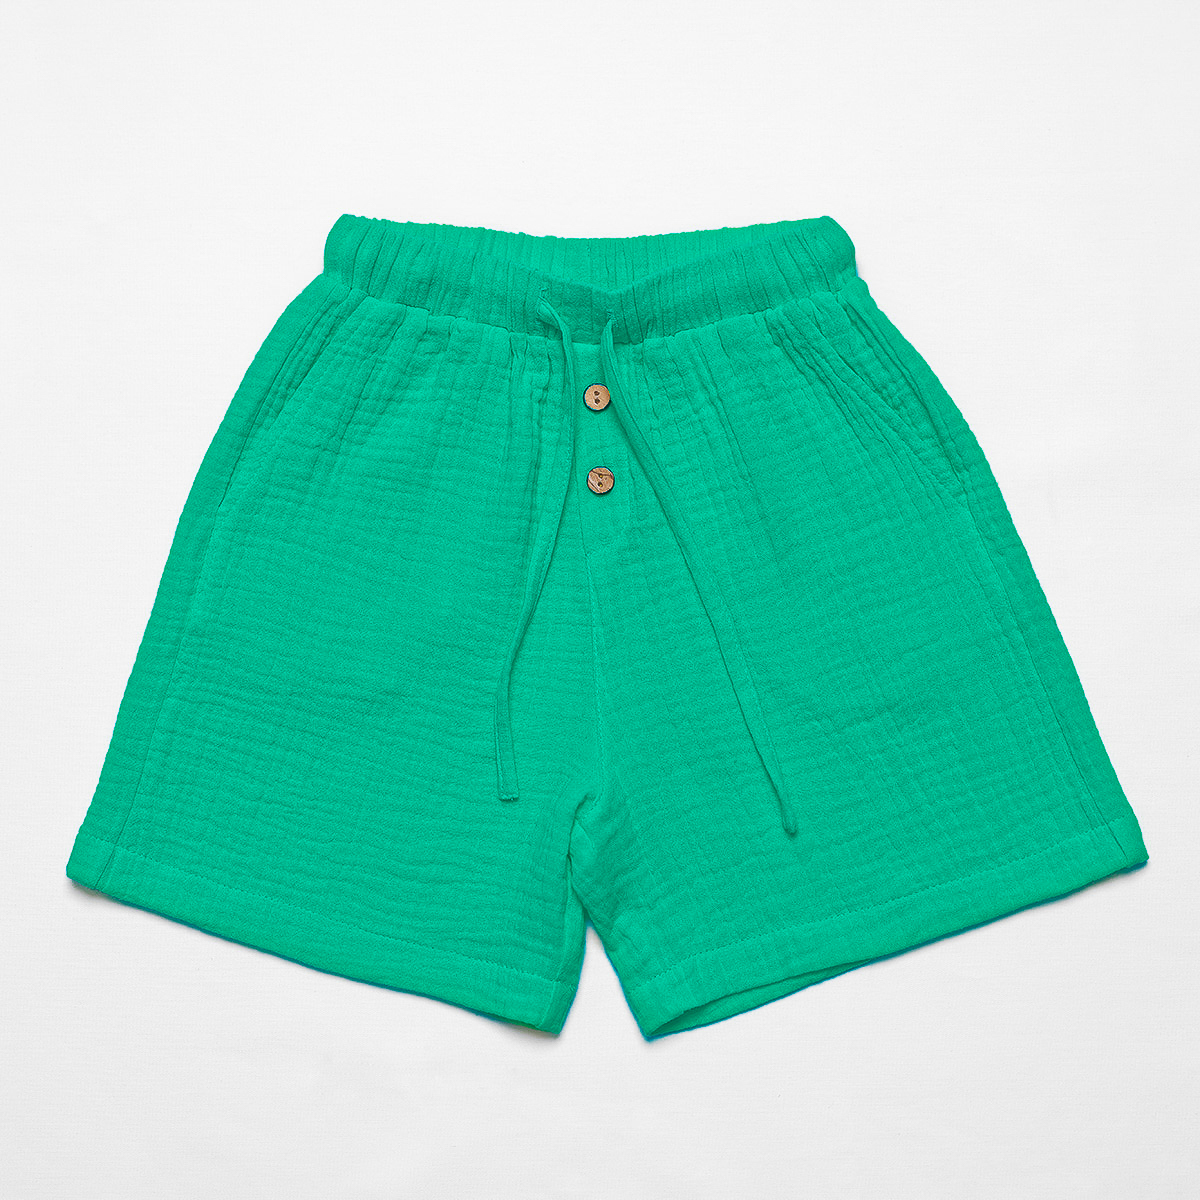 Pantaloni scurți din muselină - Harmoy, Emerald